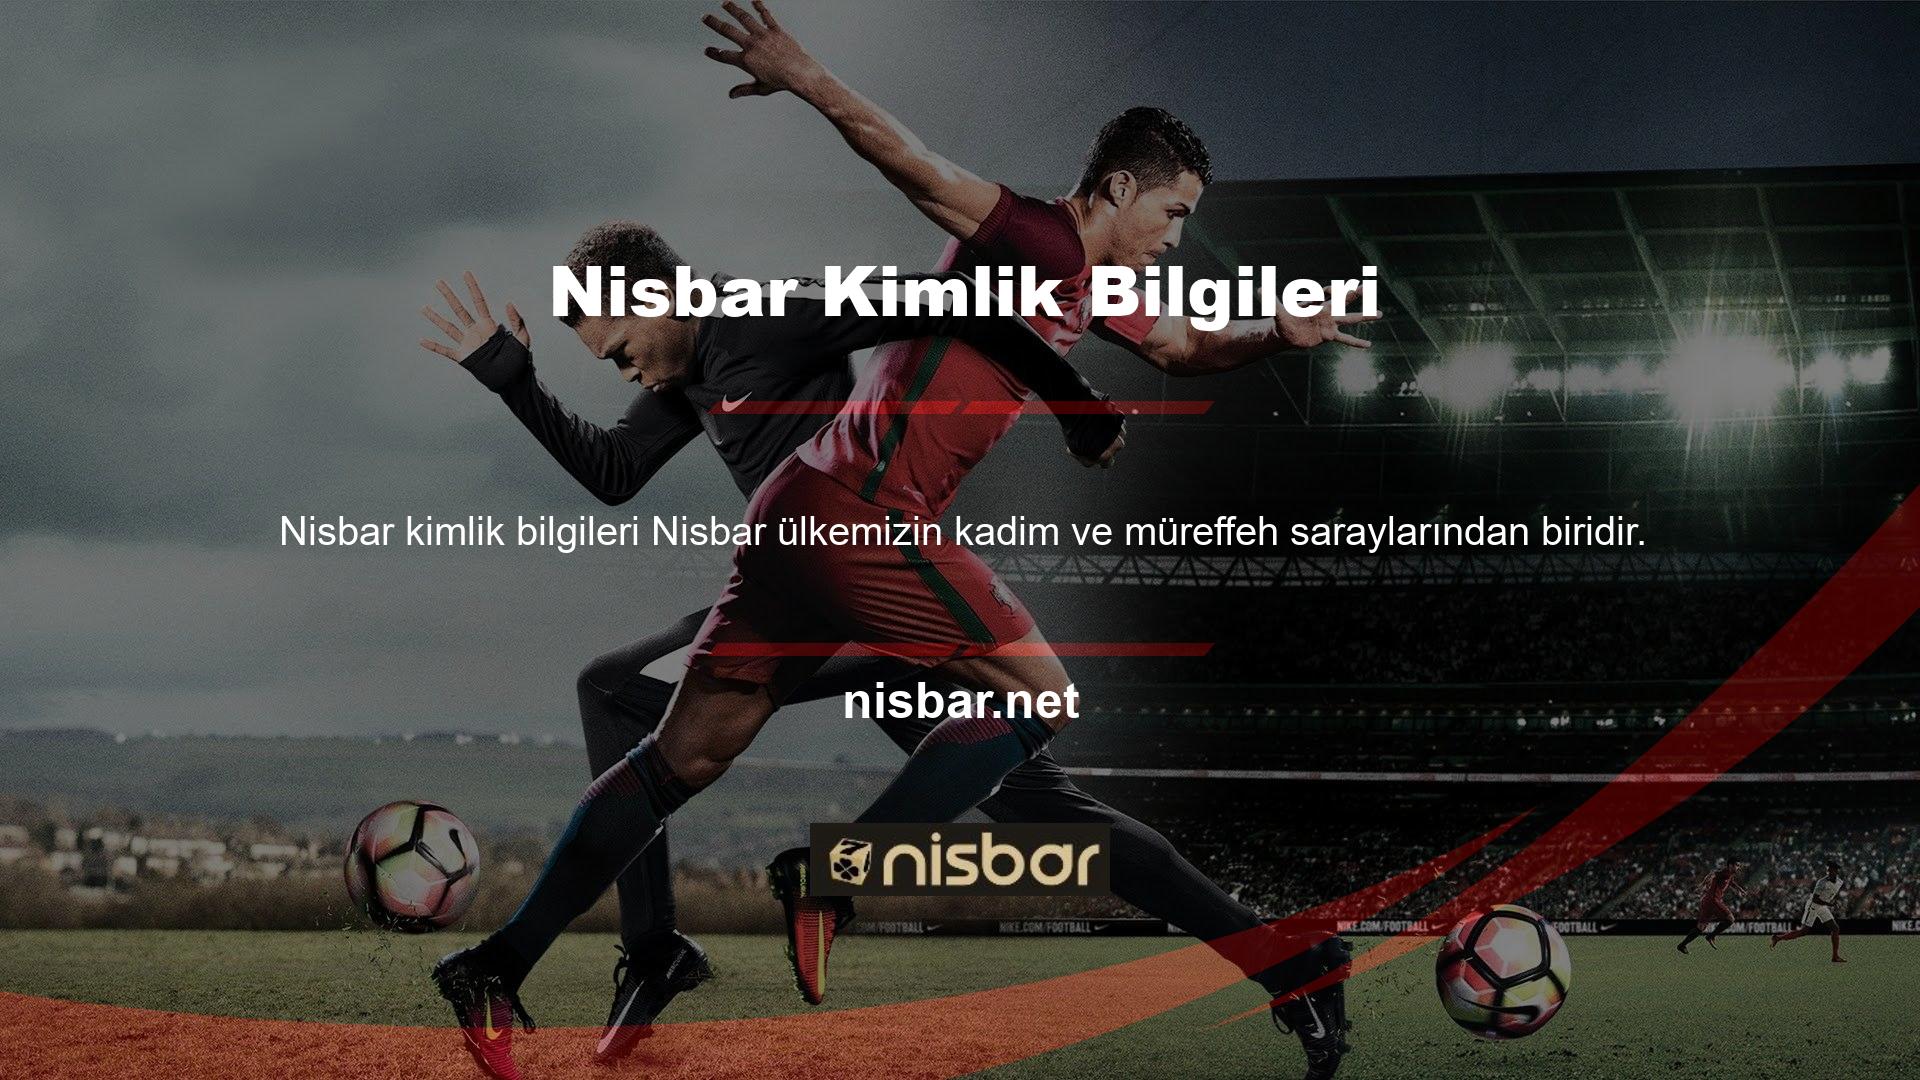 Nisbar Bahis, kullanıcıların genellikle beğendiği birçok promosyonla çeşitli avantajlar sunan profesyonel bir web sitesi haline geldi